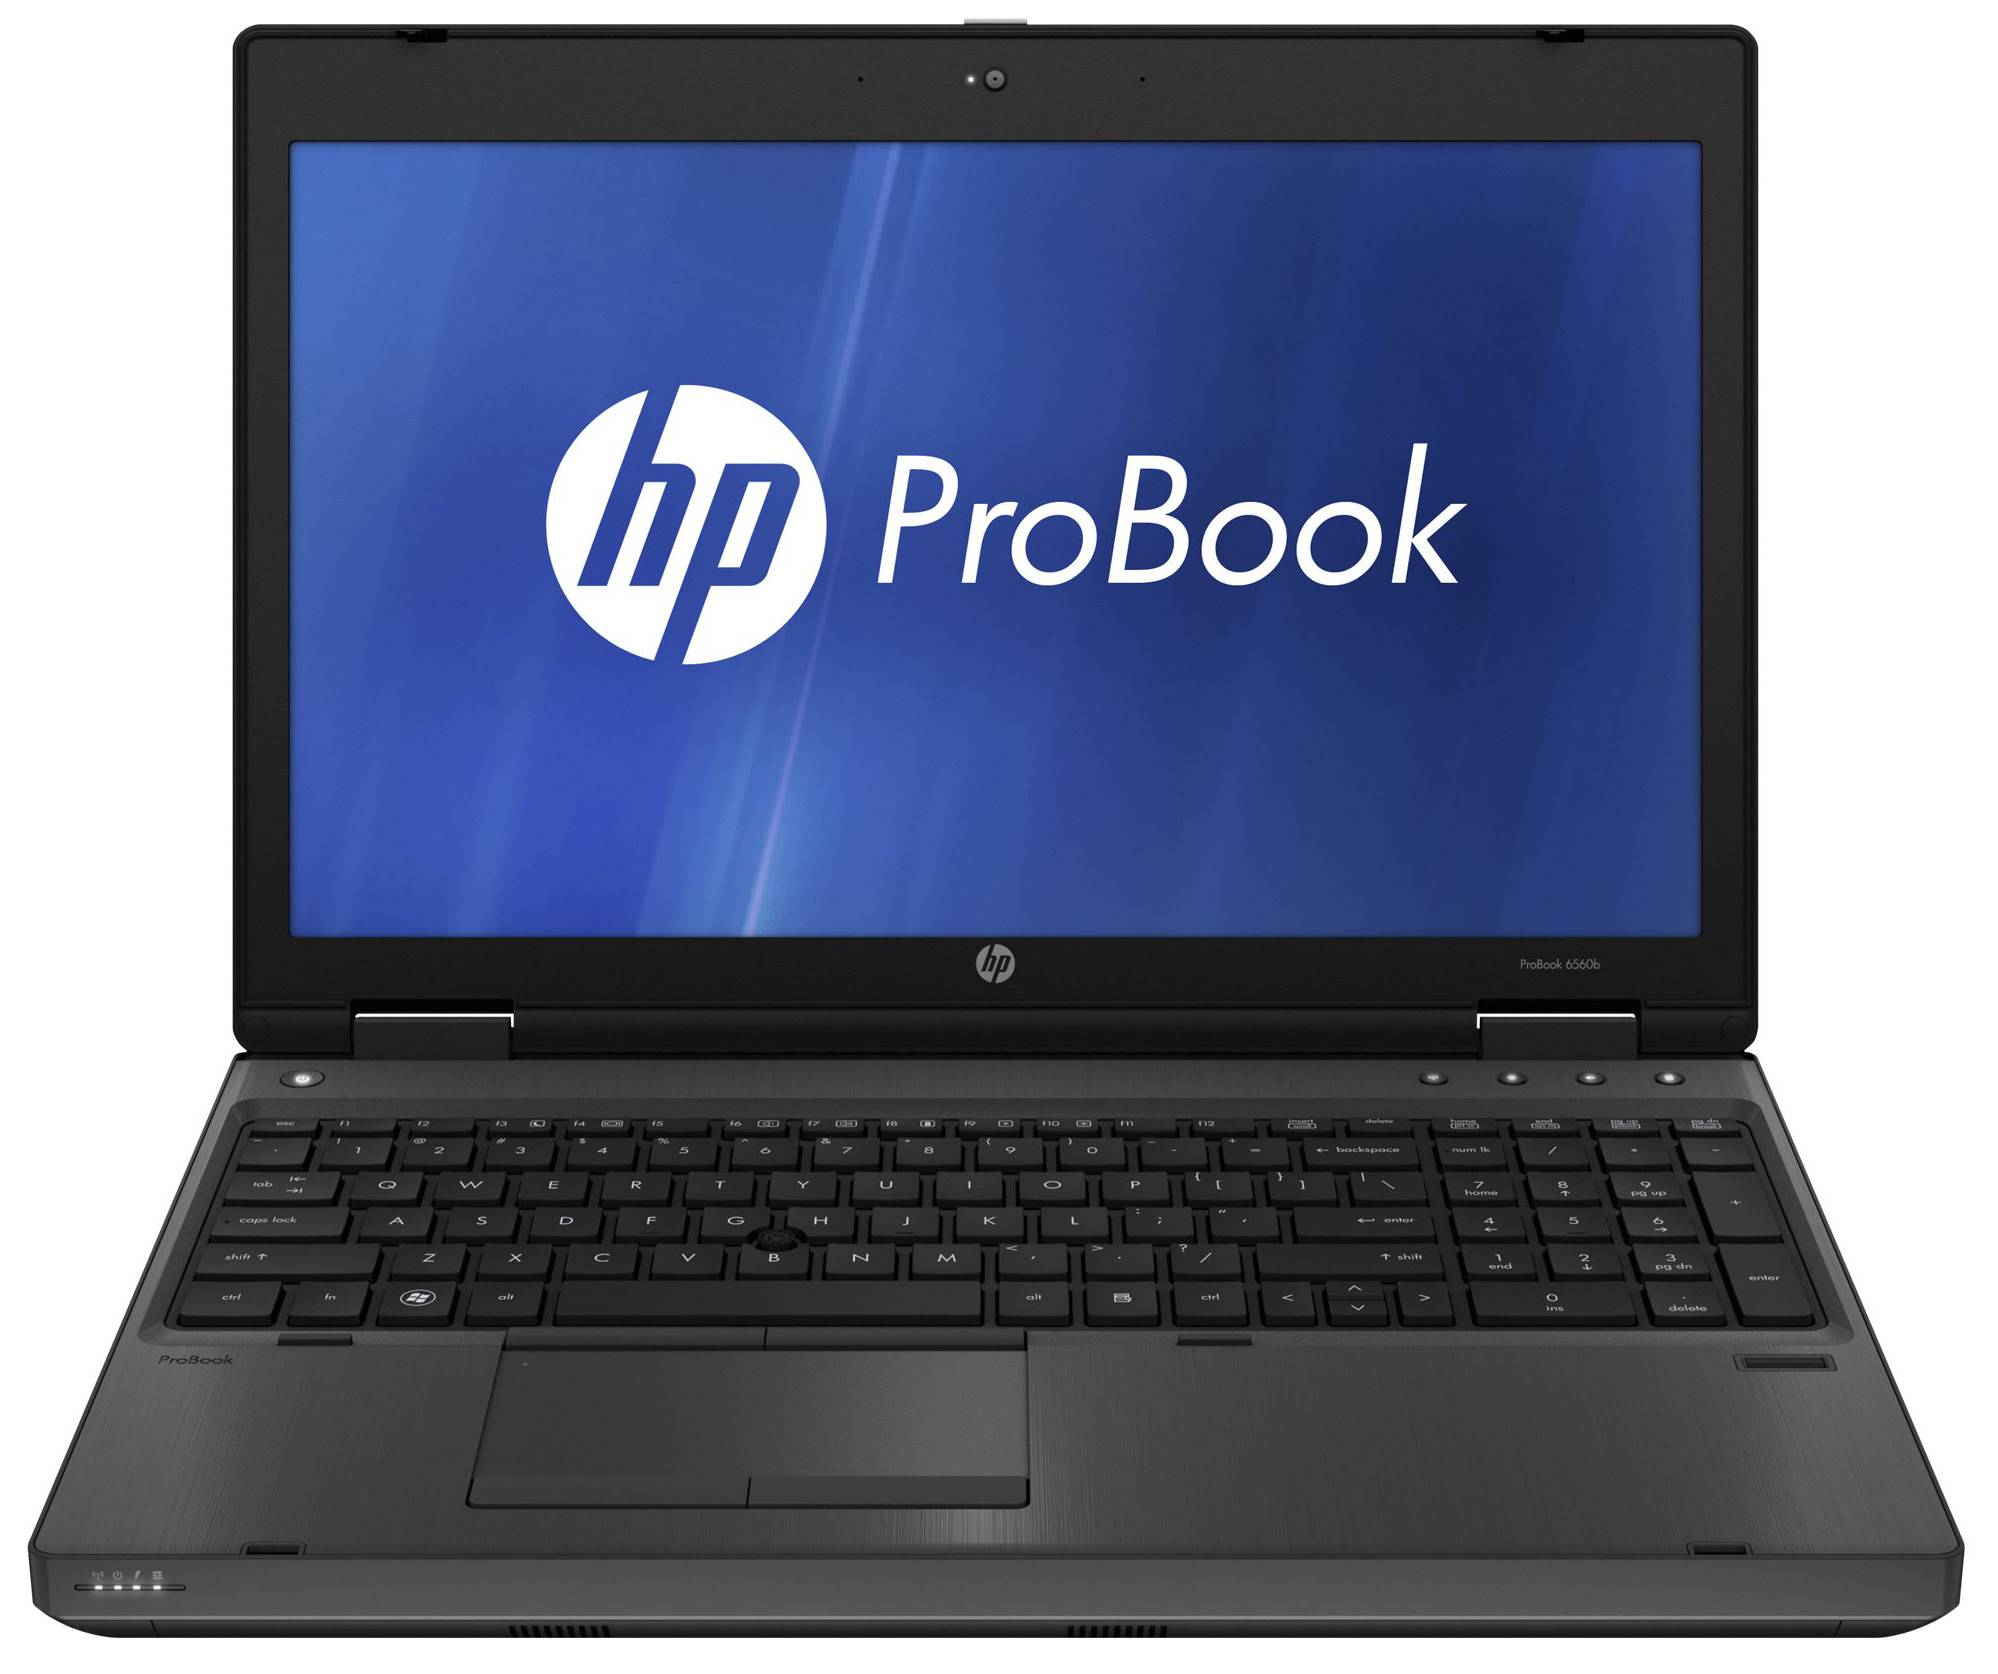 لپتاپ اچ پی استوک (HP) | ProBook 6560b | avincomp.com